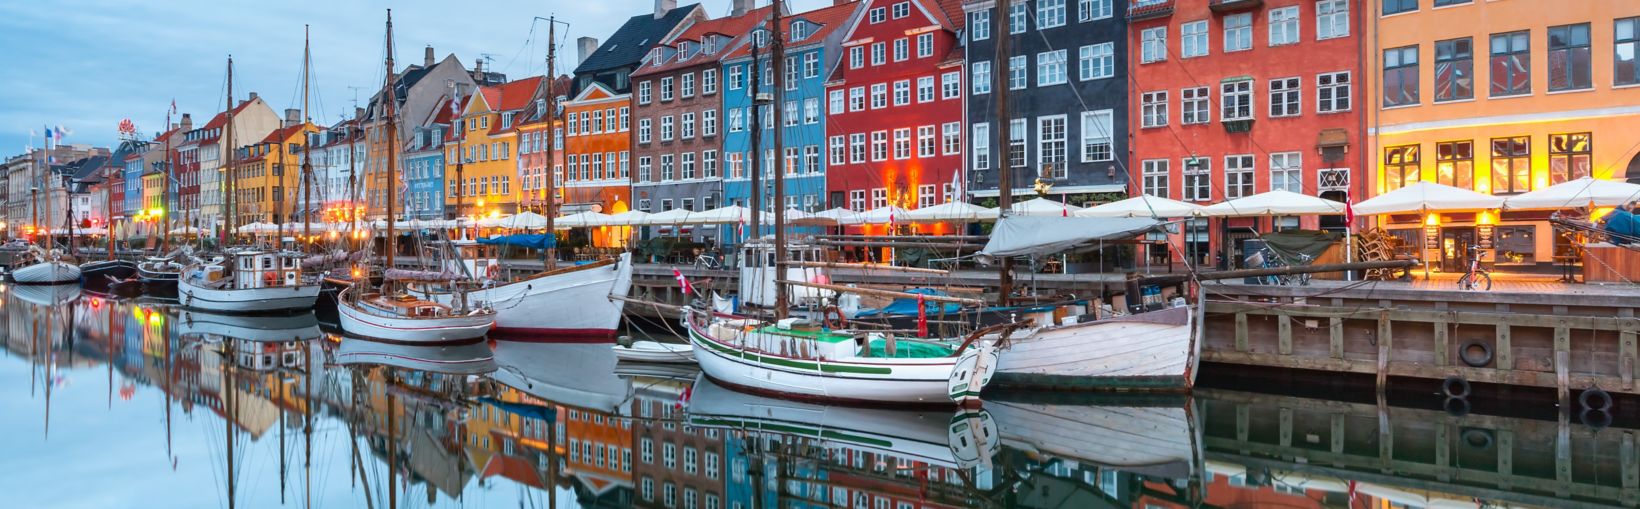 Nyhavn con facciate colorate di vecchie case e vecchie navi nel centro storico di Copenaghen, capitale della Danimarca.